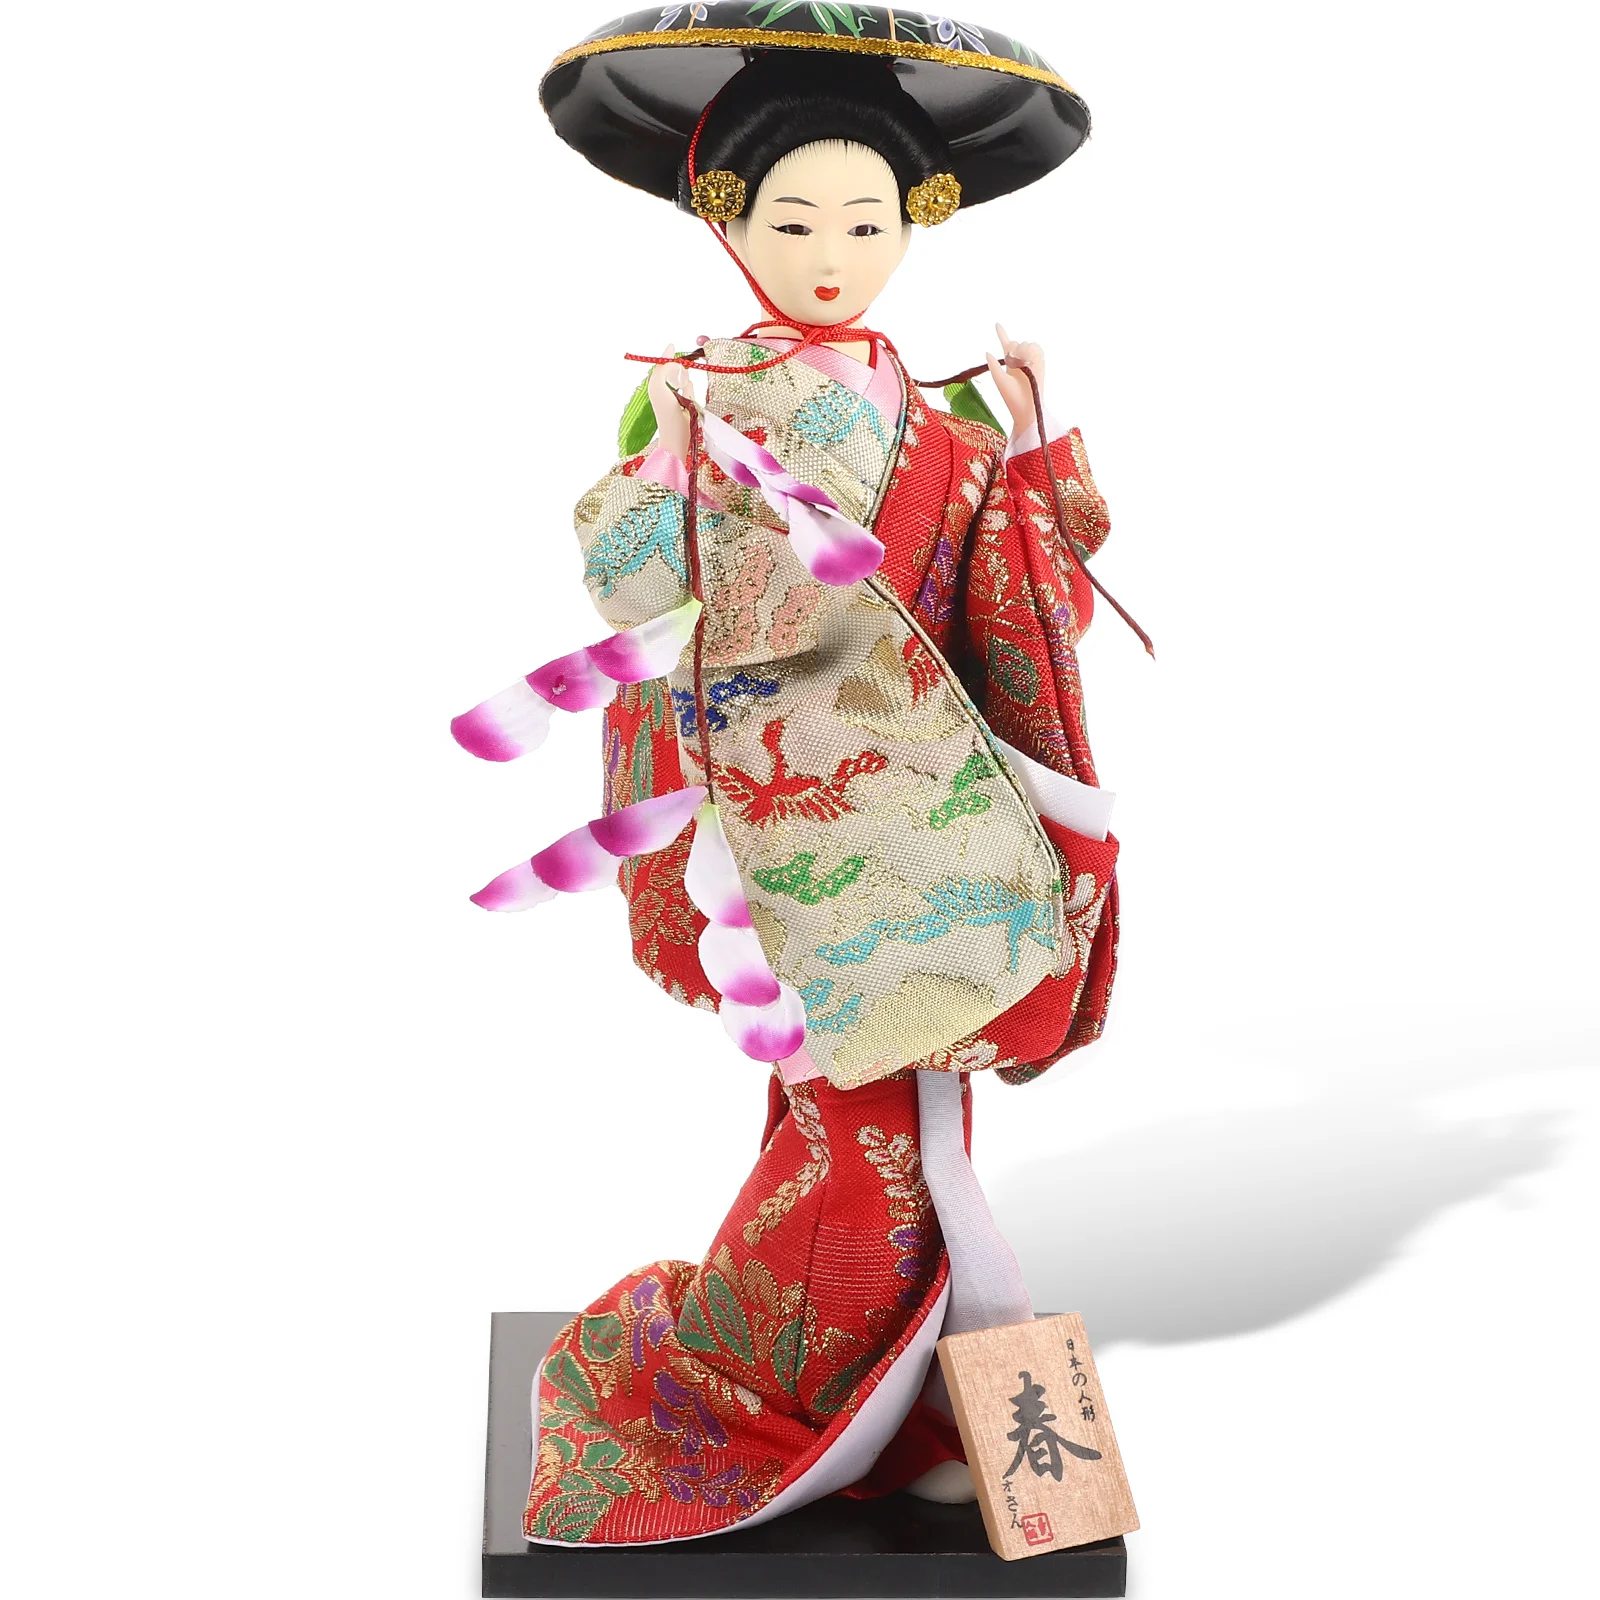 

Японские украшения гейши настольные игрушки декоративное кимоно на приборную панель из смолы фигурки в стиле отеля для офиса азиатские